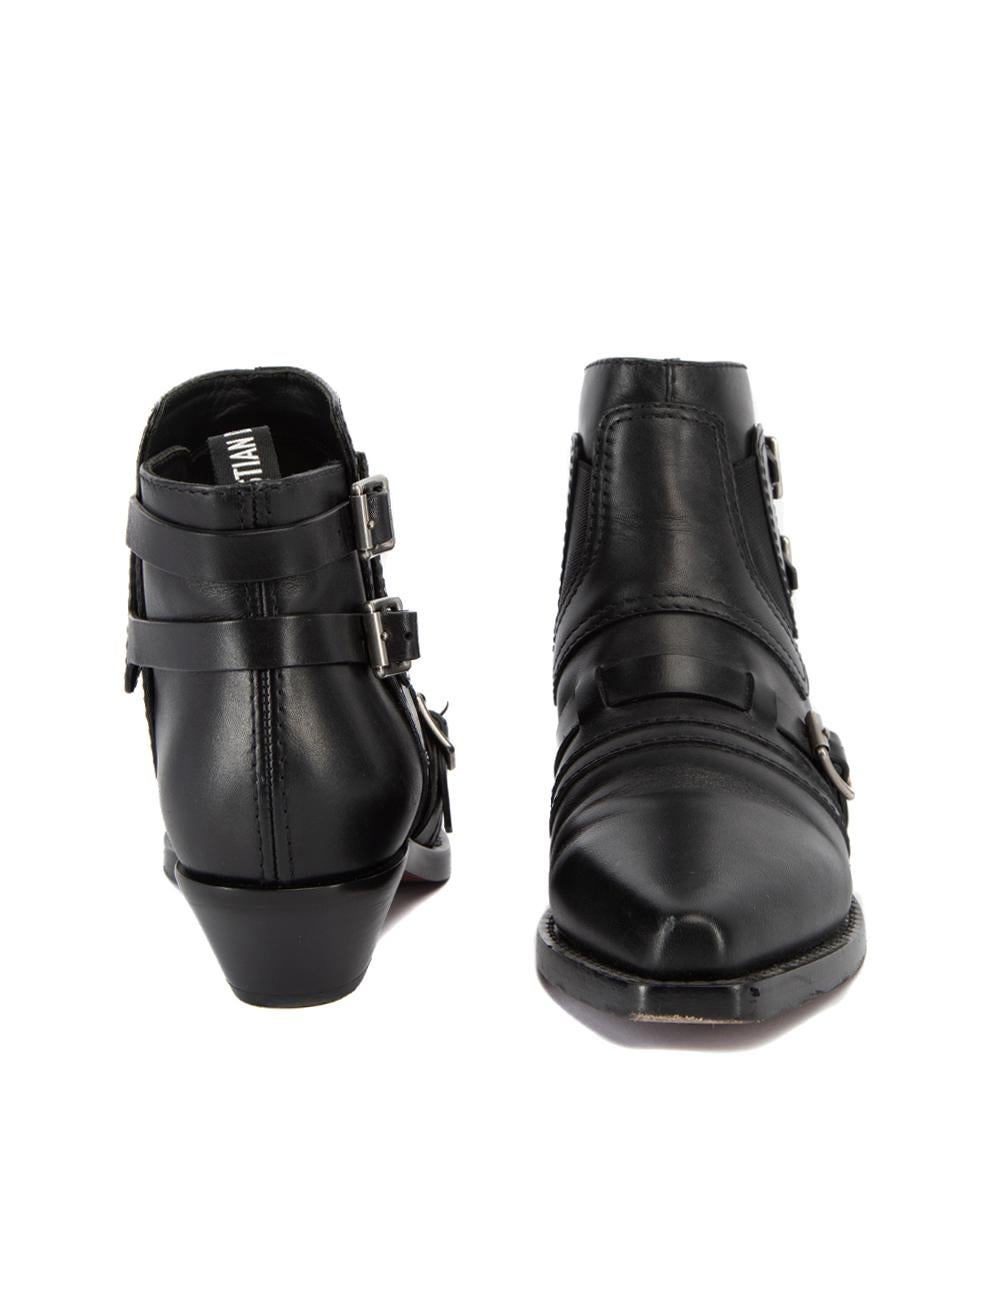 saddle shoe boots